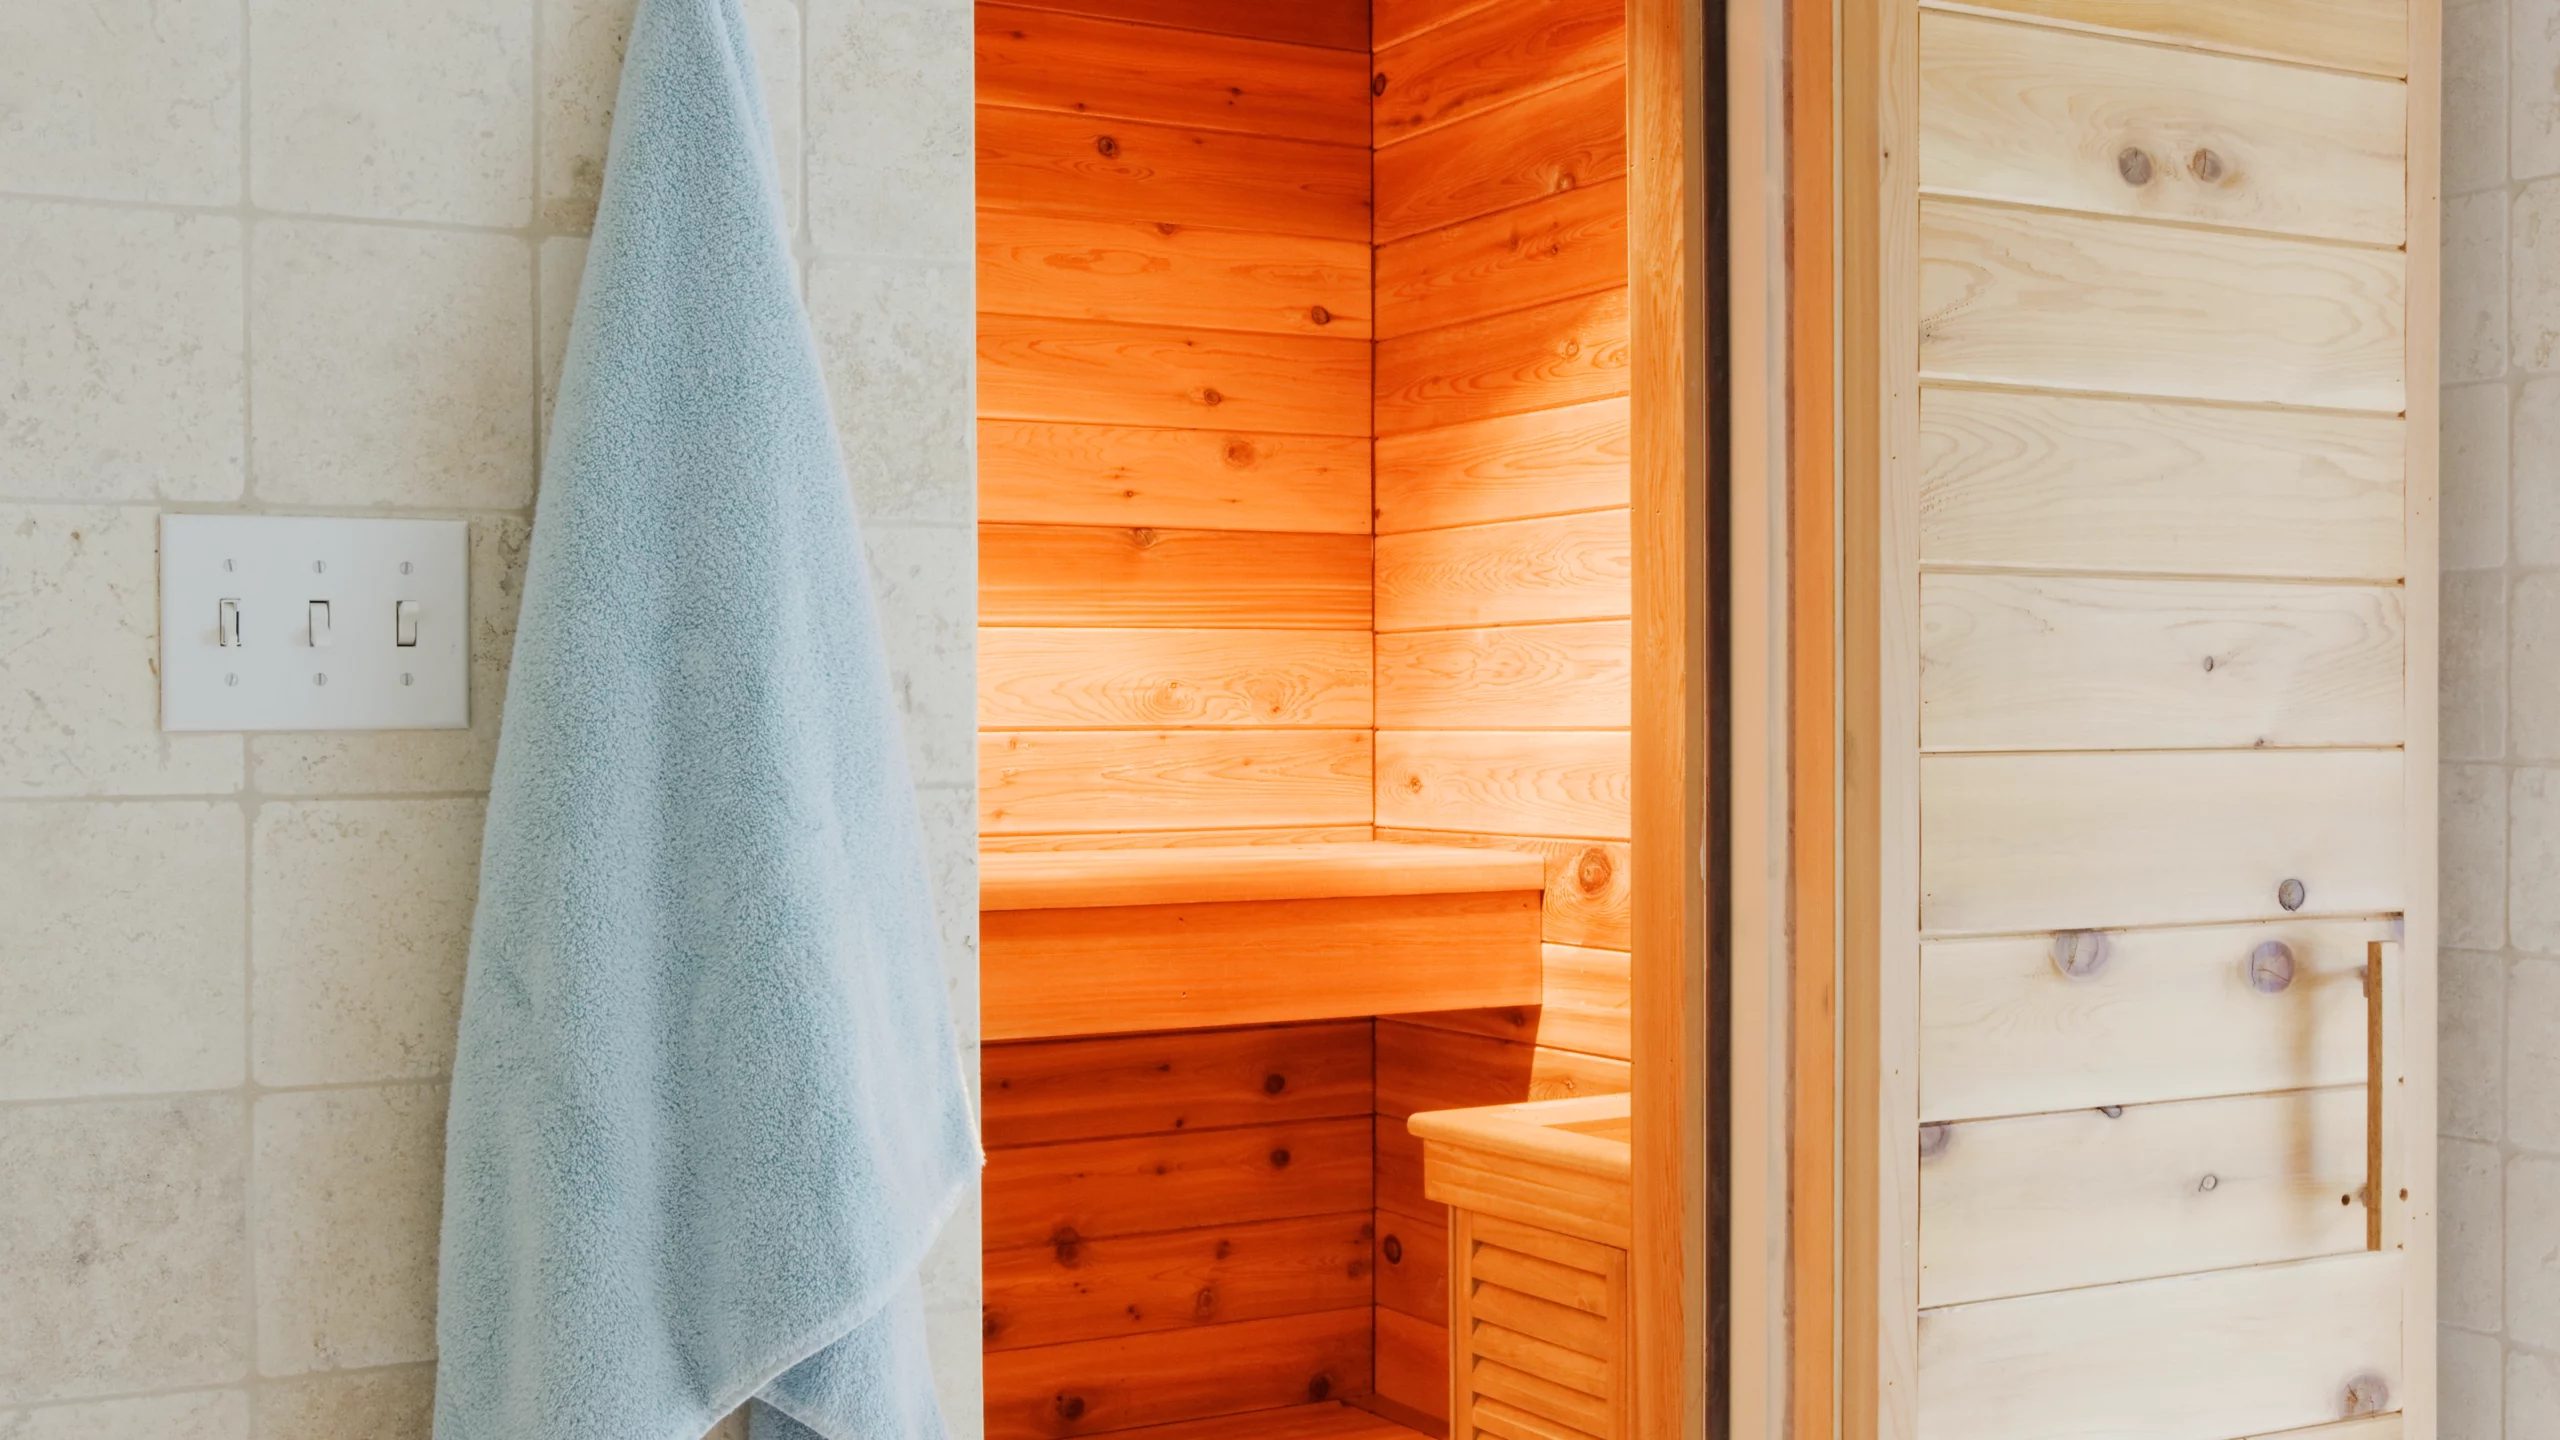 Light blue towel hanging by dry sauna door.